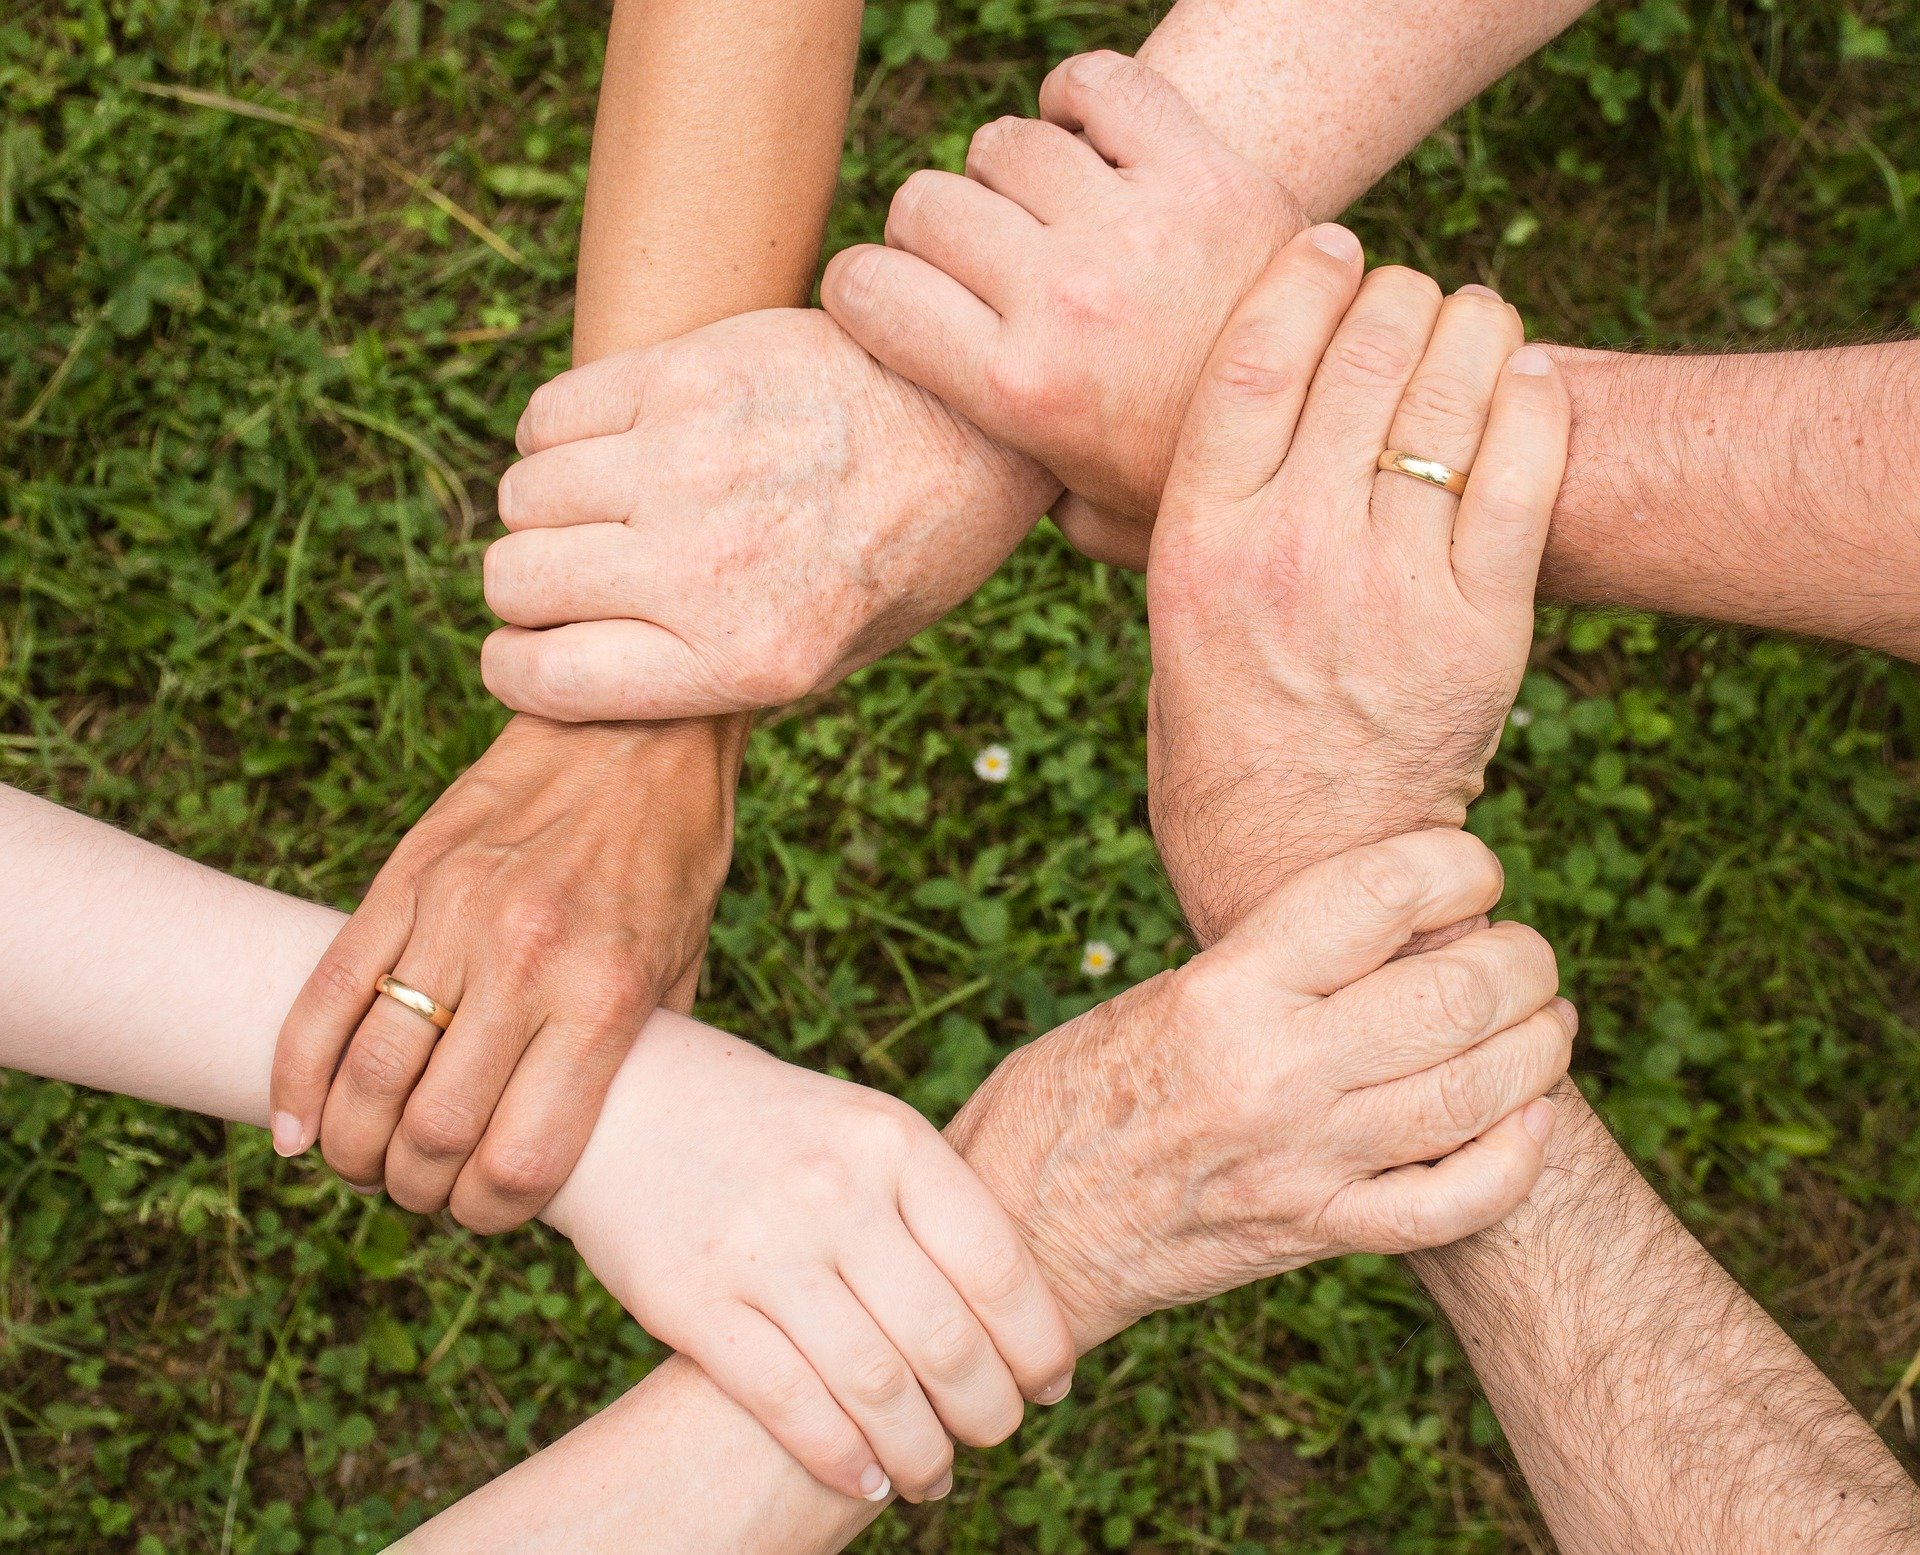 Handen ineen geslagen ter illustratie voor het bereiken van kwetsbare mensen. Bron: Pixabay.